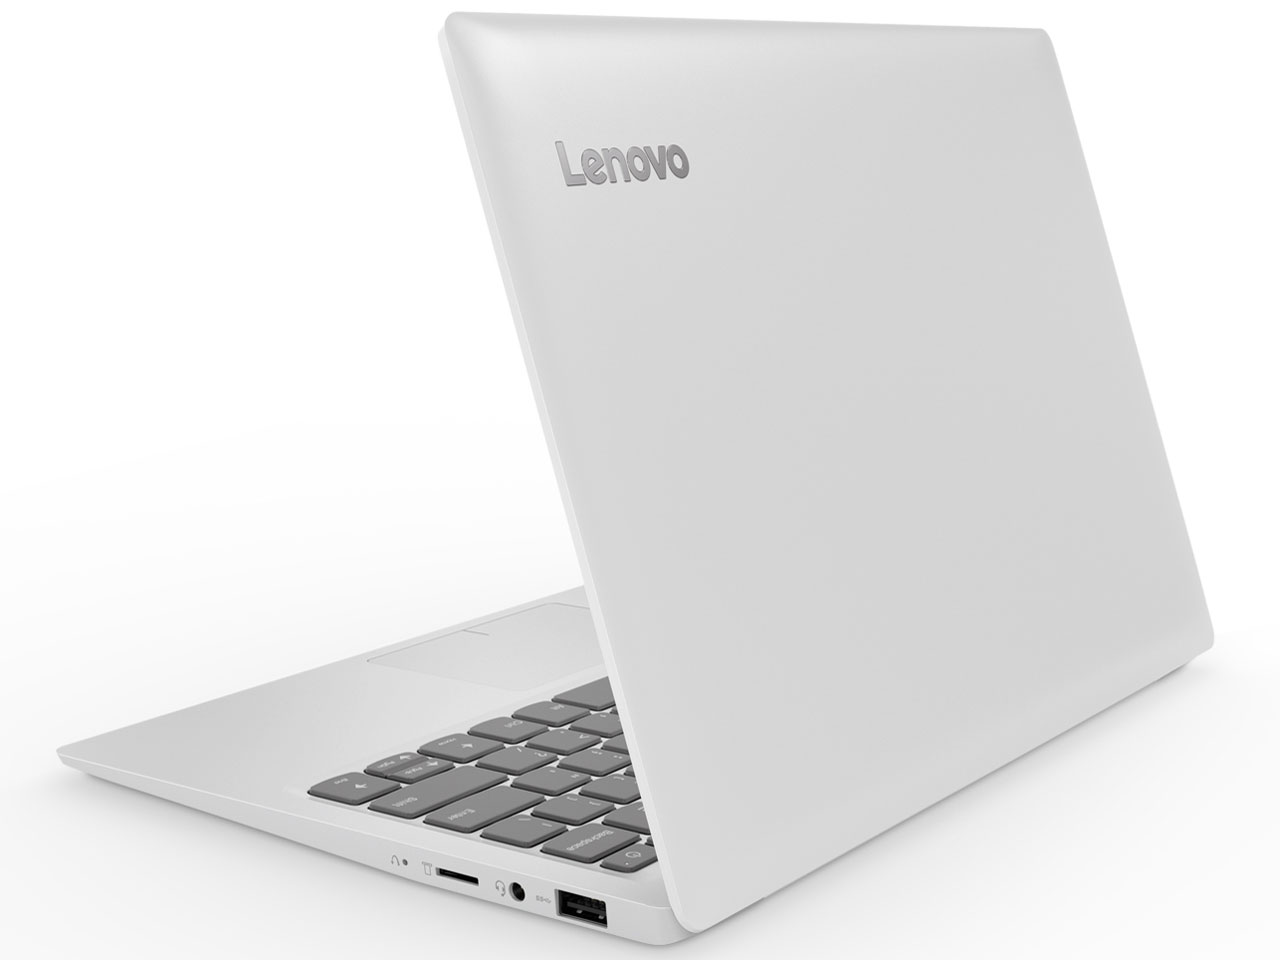 Lenovo Ideapad 100 1s 取扱説明書 レビュー記事 トリセツ